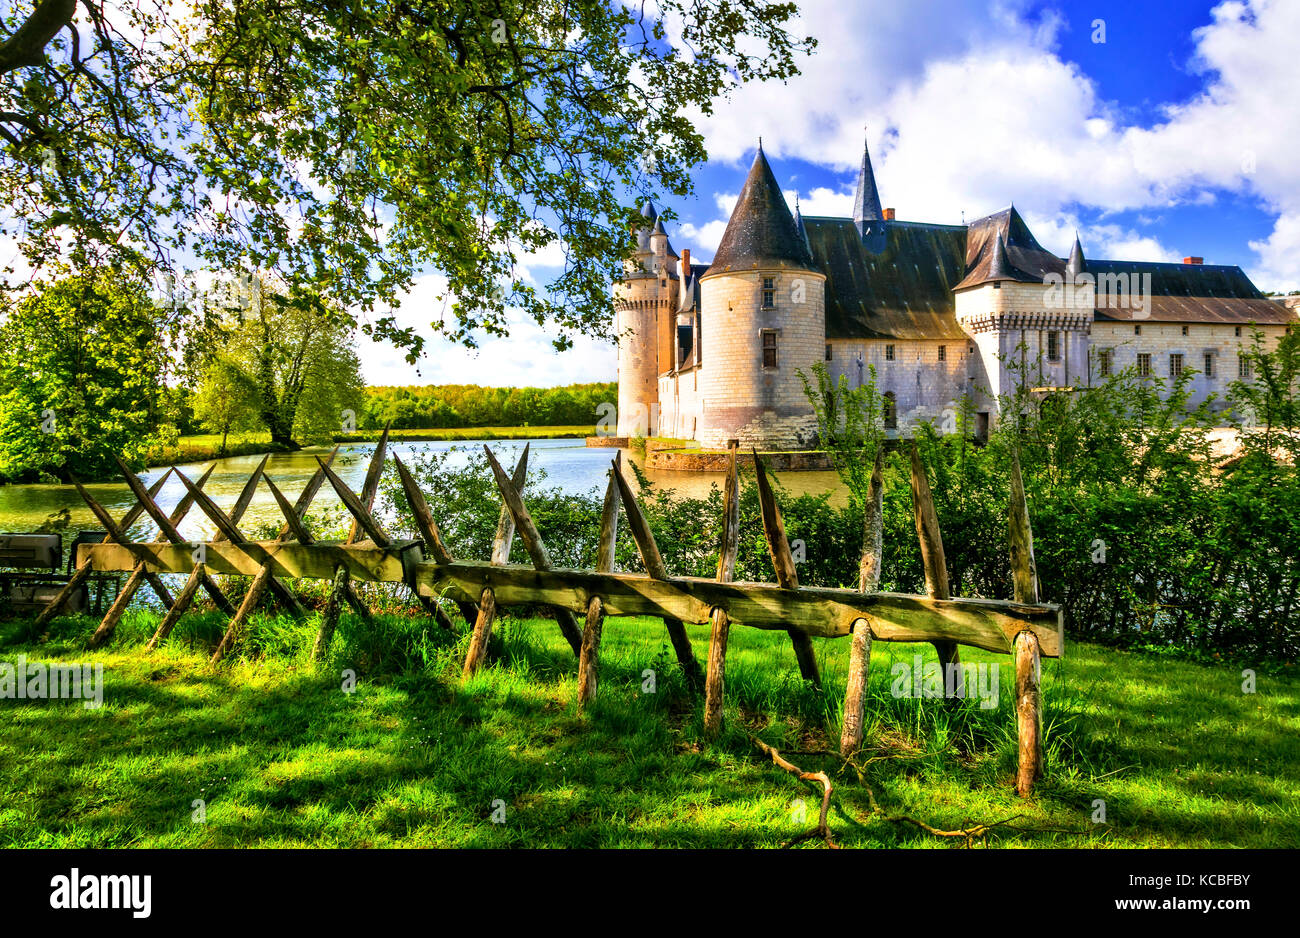 Châteaux romantiques de la vallée de la loire - plessis-bourre. France Banque D'Images